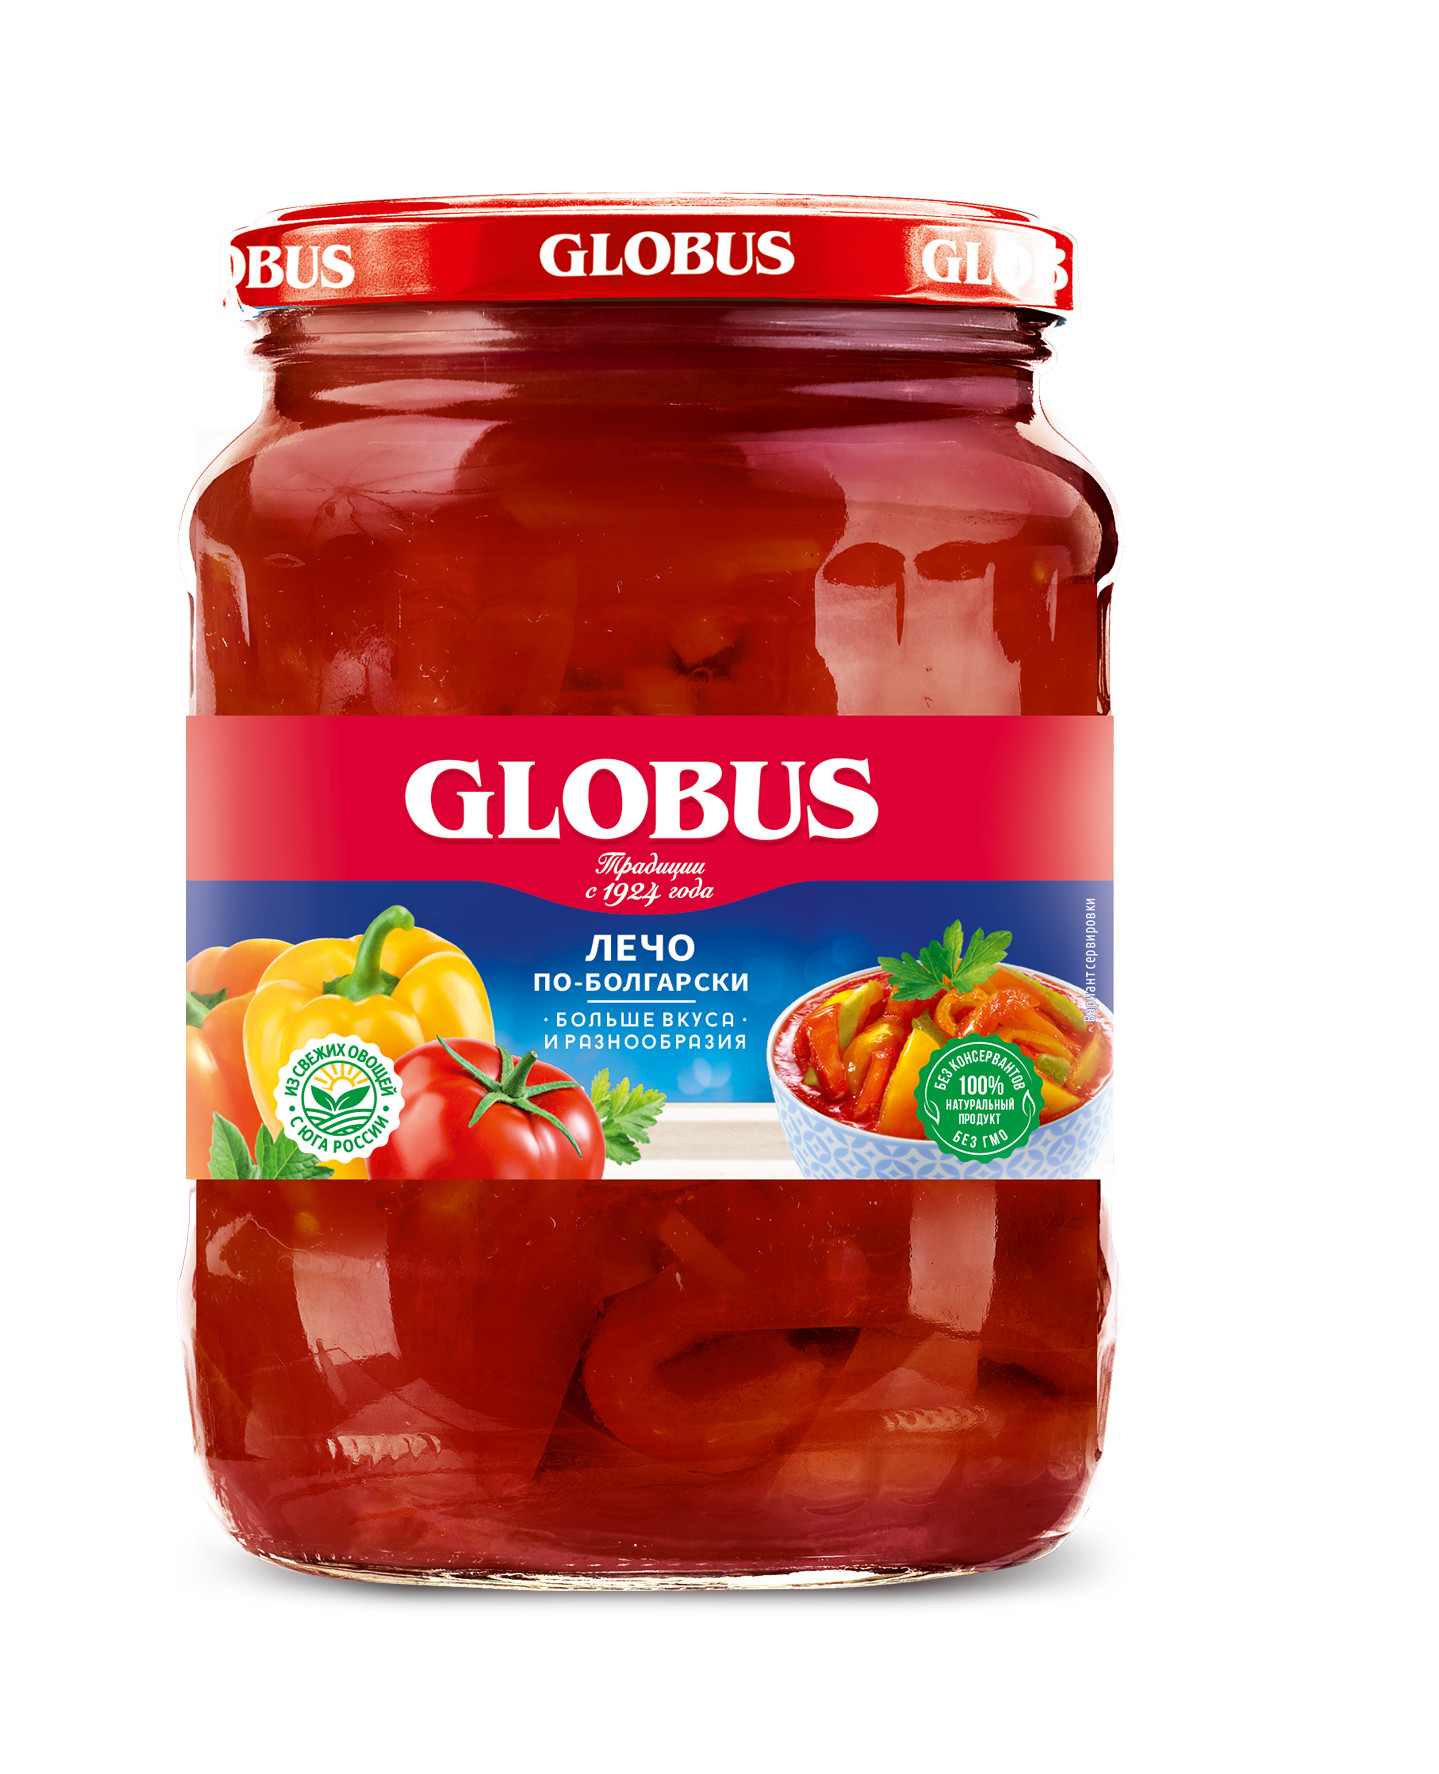 Глобус купить банки. Лечо Globus по-болгарски 680 г. Globus лечо по-болгарски. Лечо Globus натуральное, 680 г. Консервы Глобус лечо.